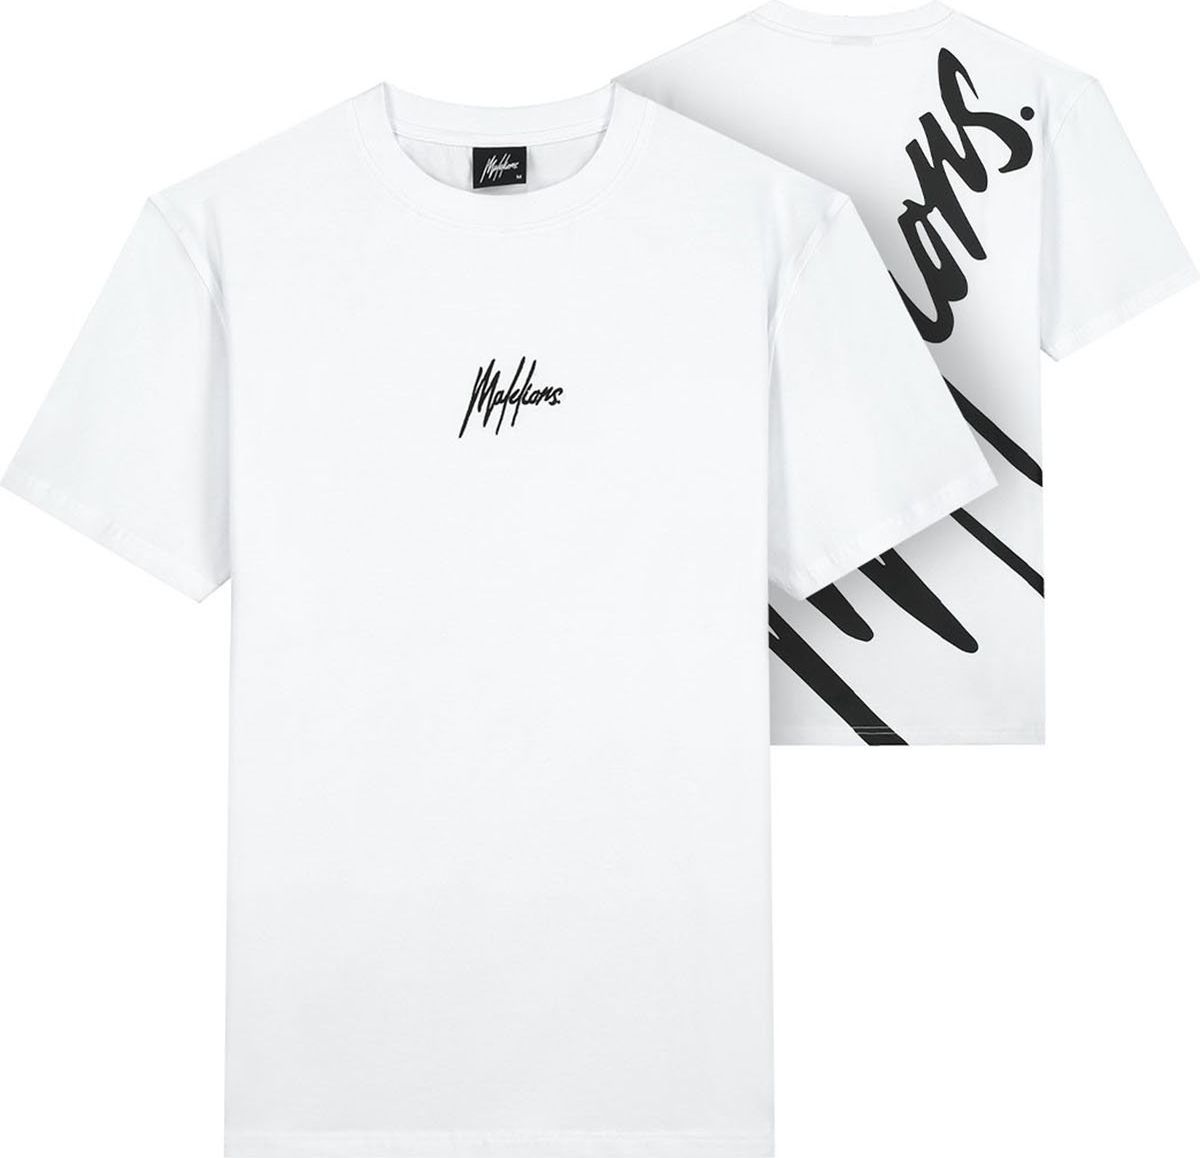 Malelions Oversized Shirt - White/Black Wit